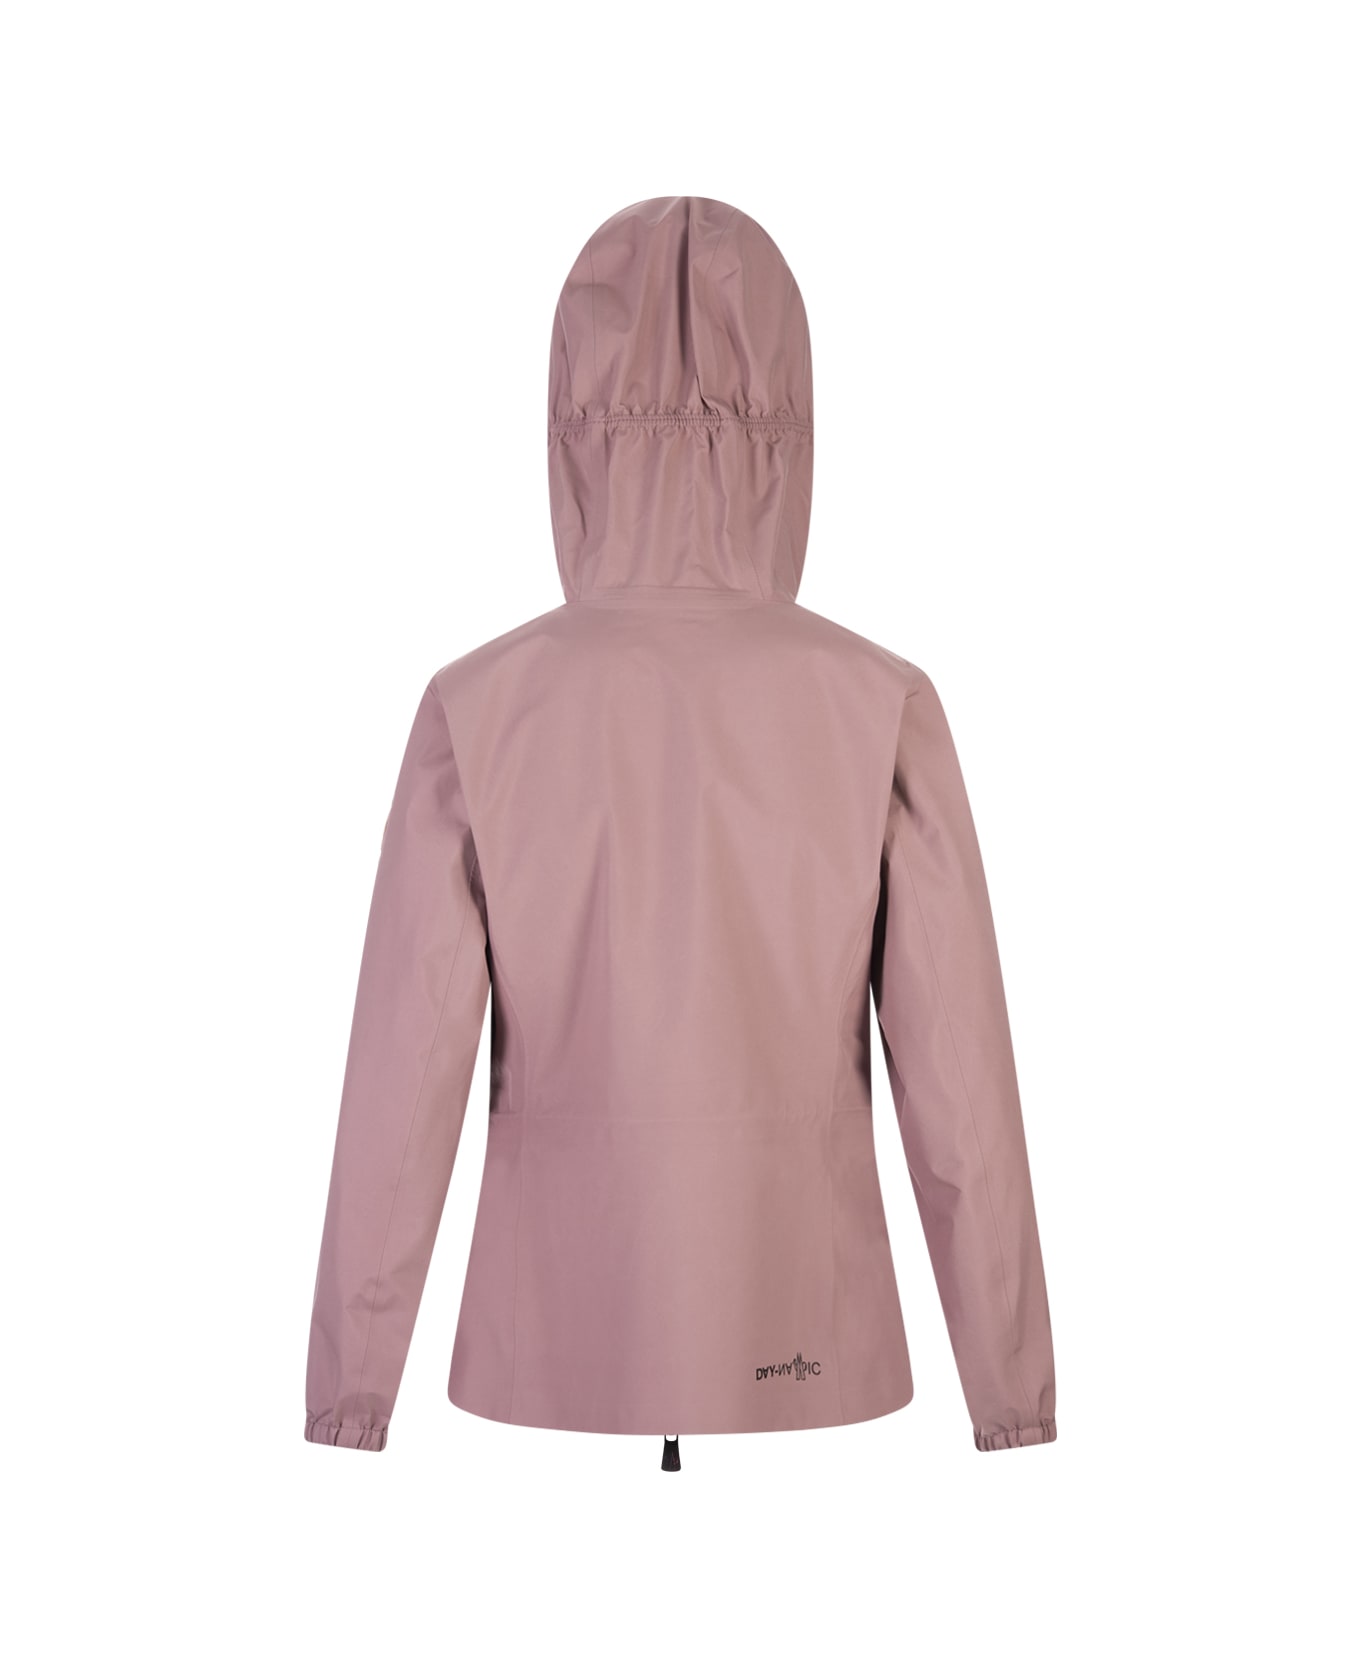 Moncler Grenoble Light Pink Valles Hooded Jacket - Pink